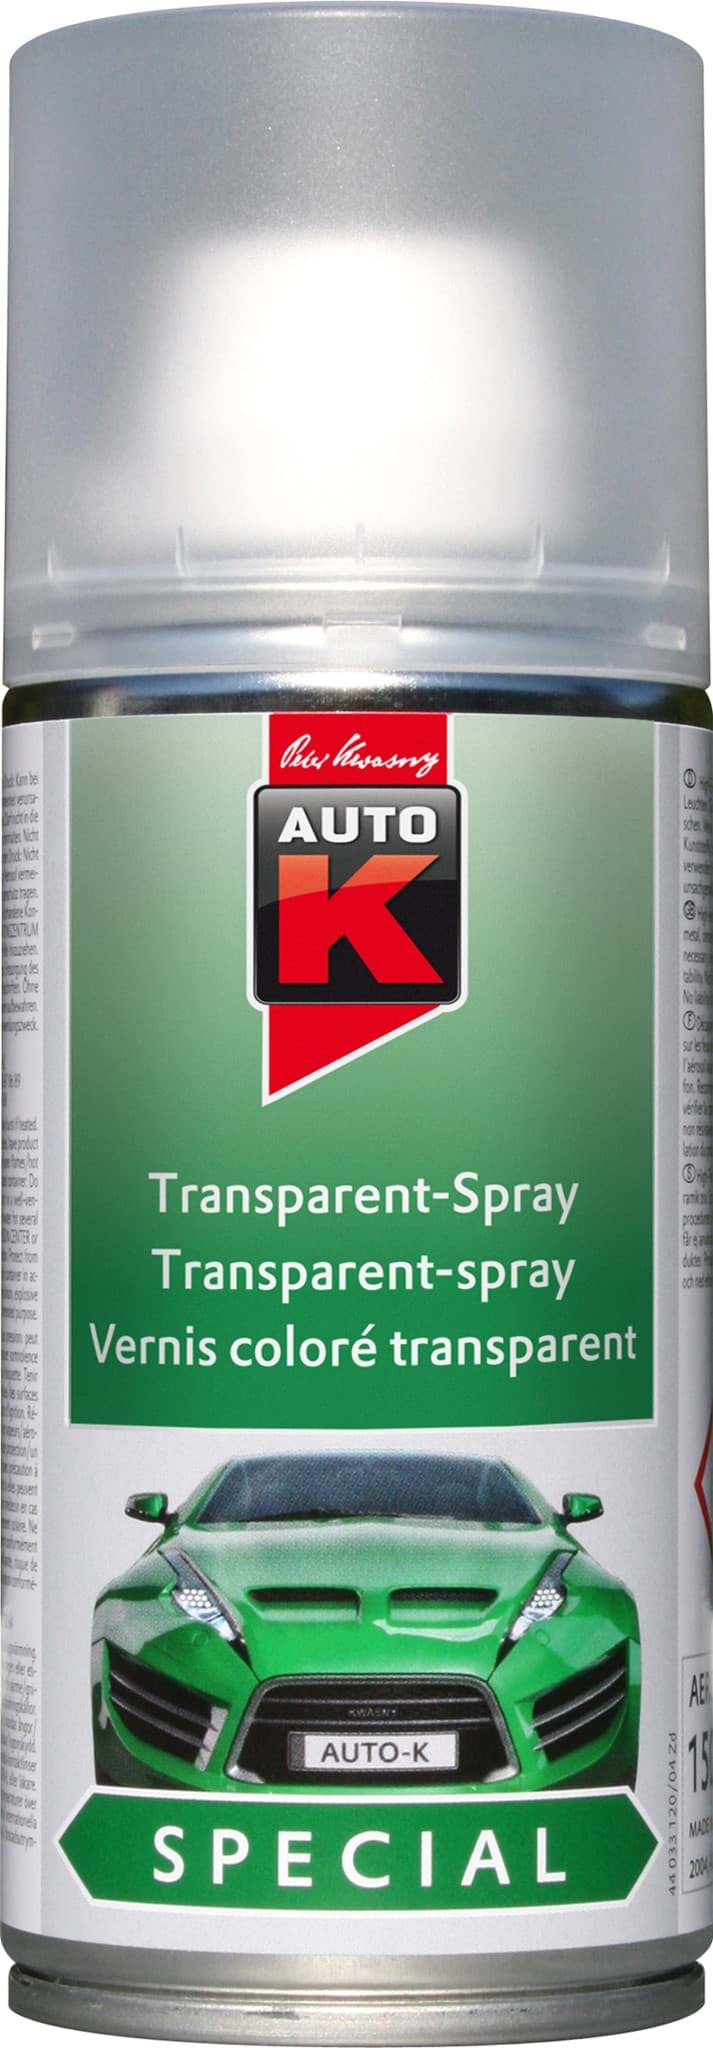 Изображение Auto-K Transparent Remover 150ml